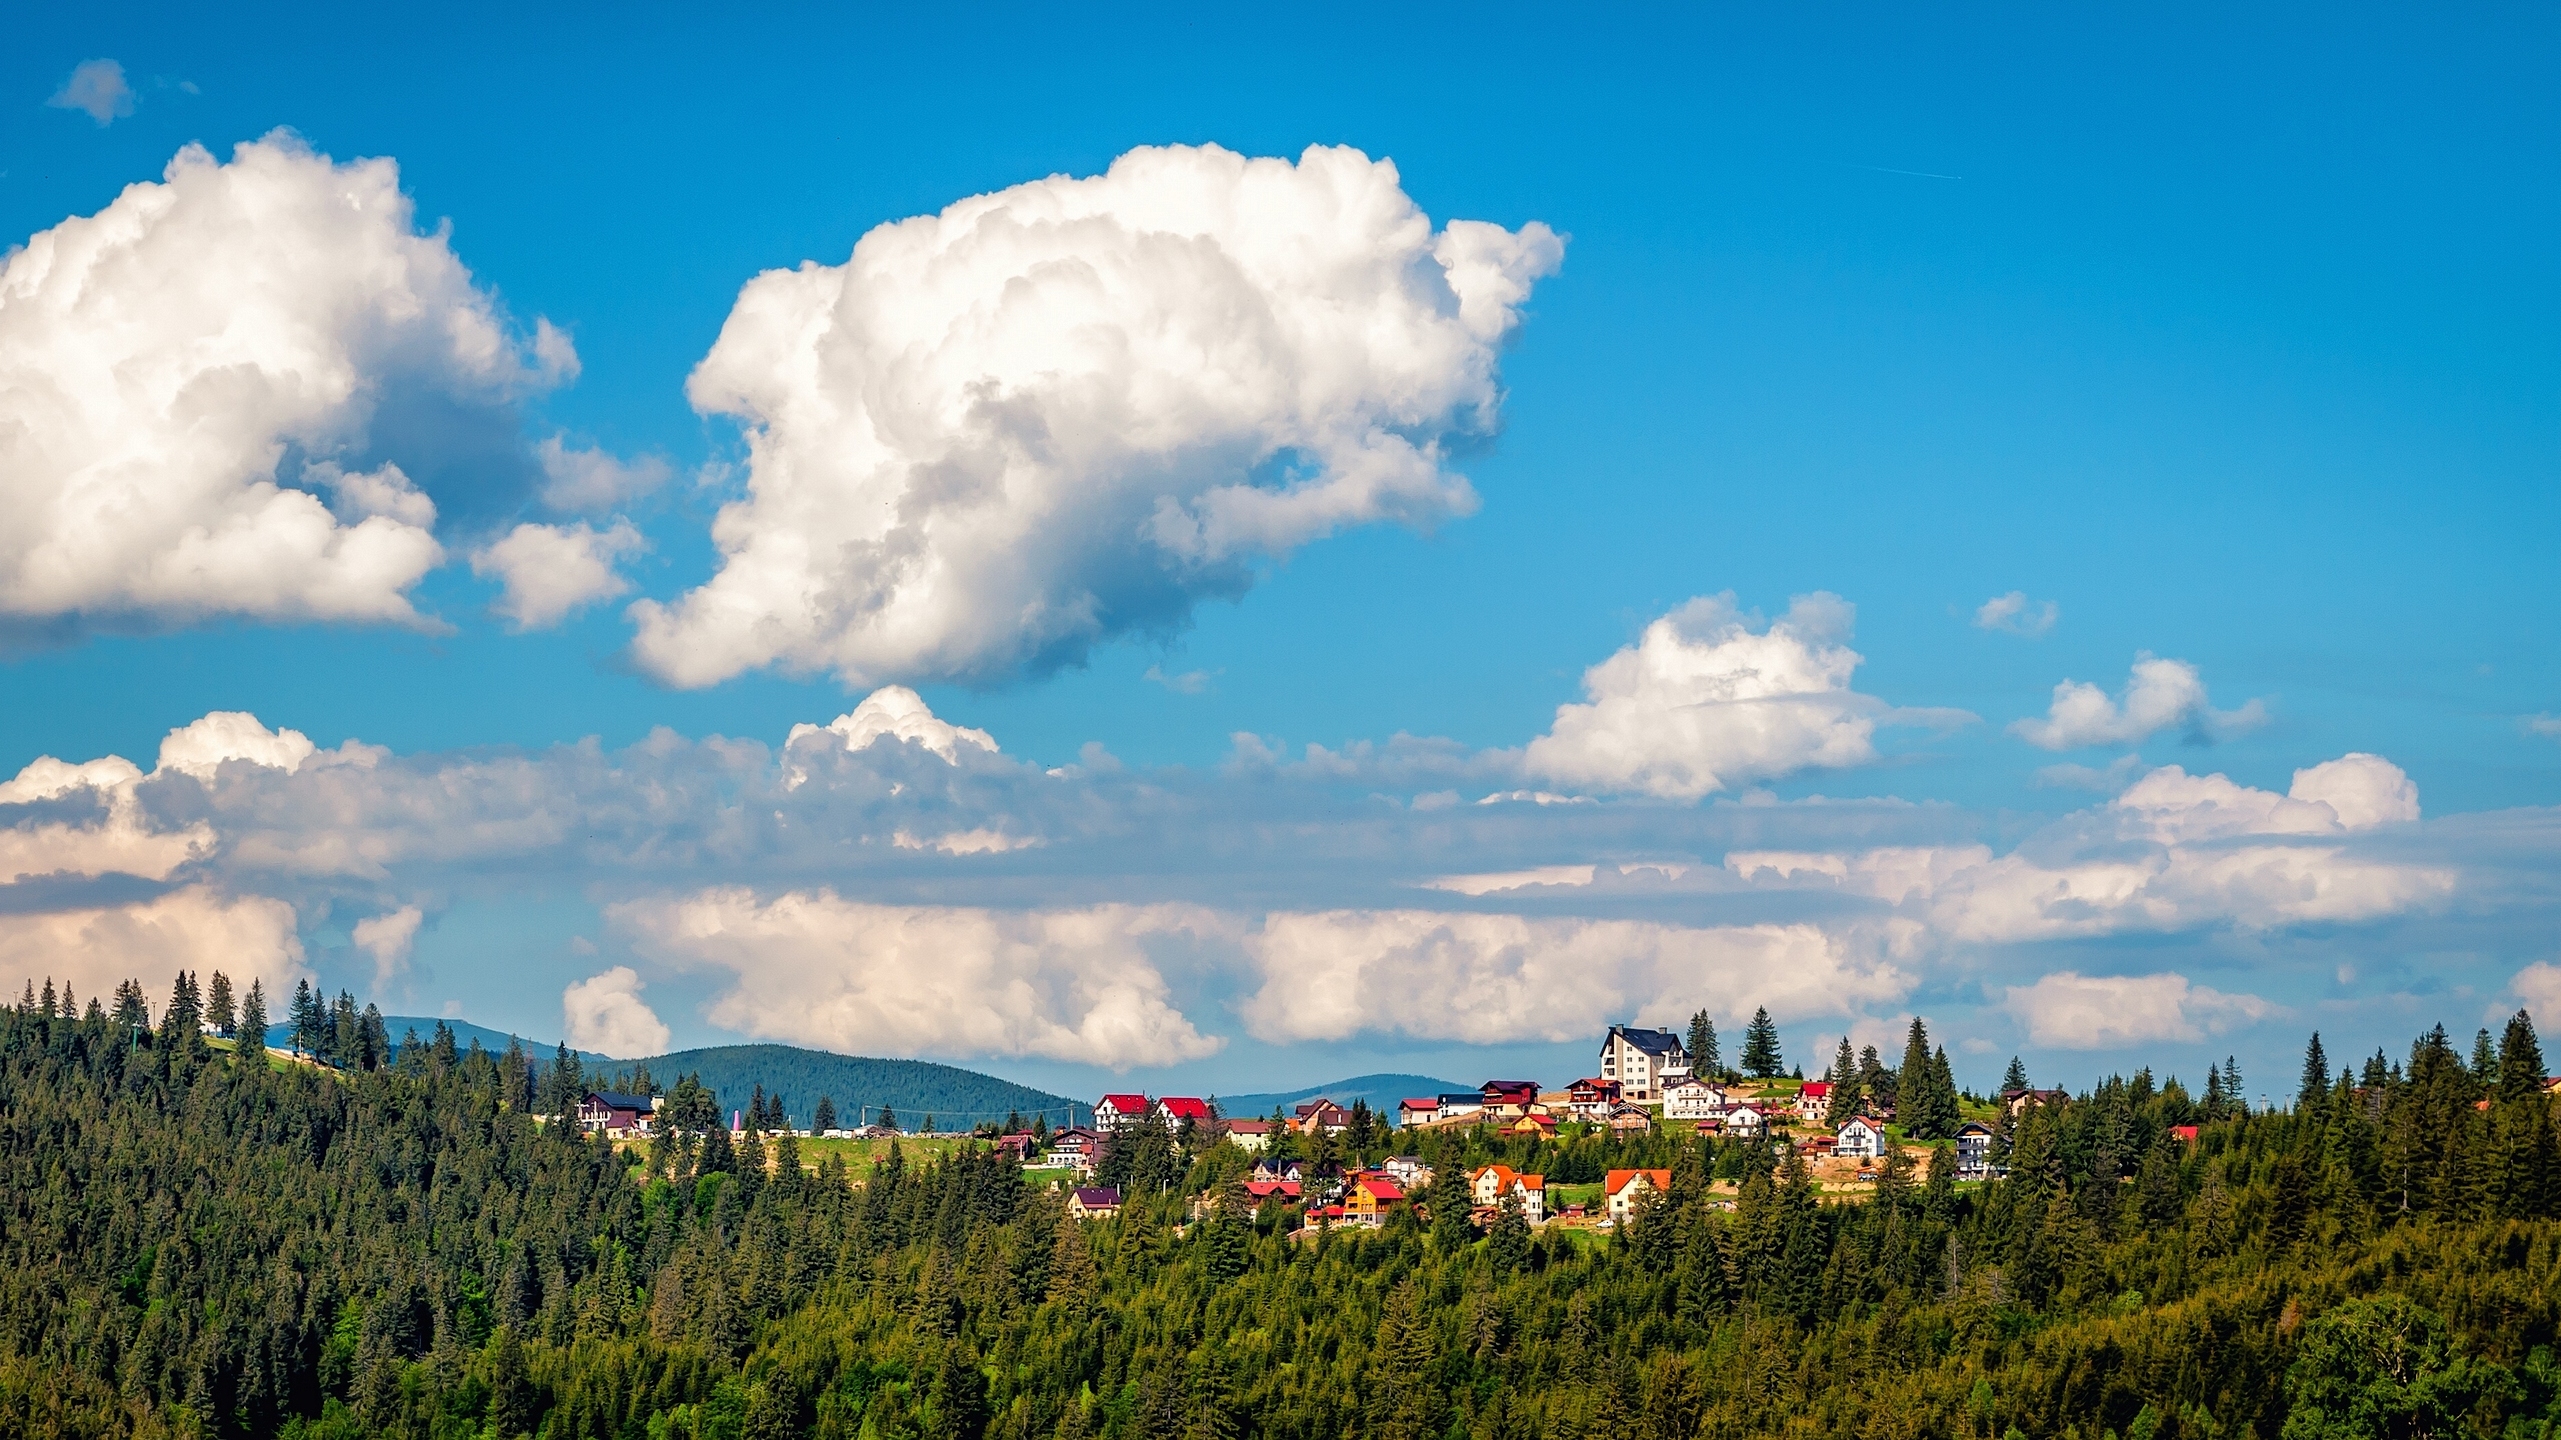 Cloud Landscape Romania Village 2561x1440